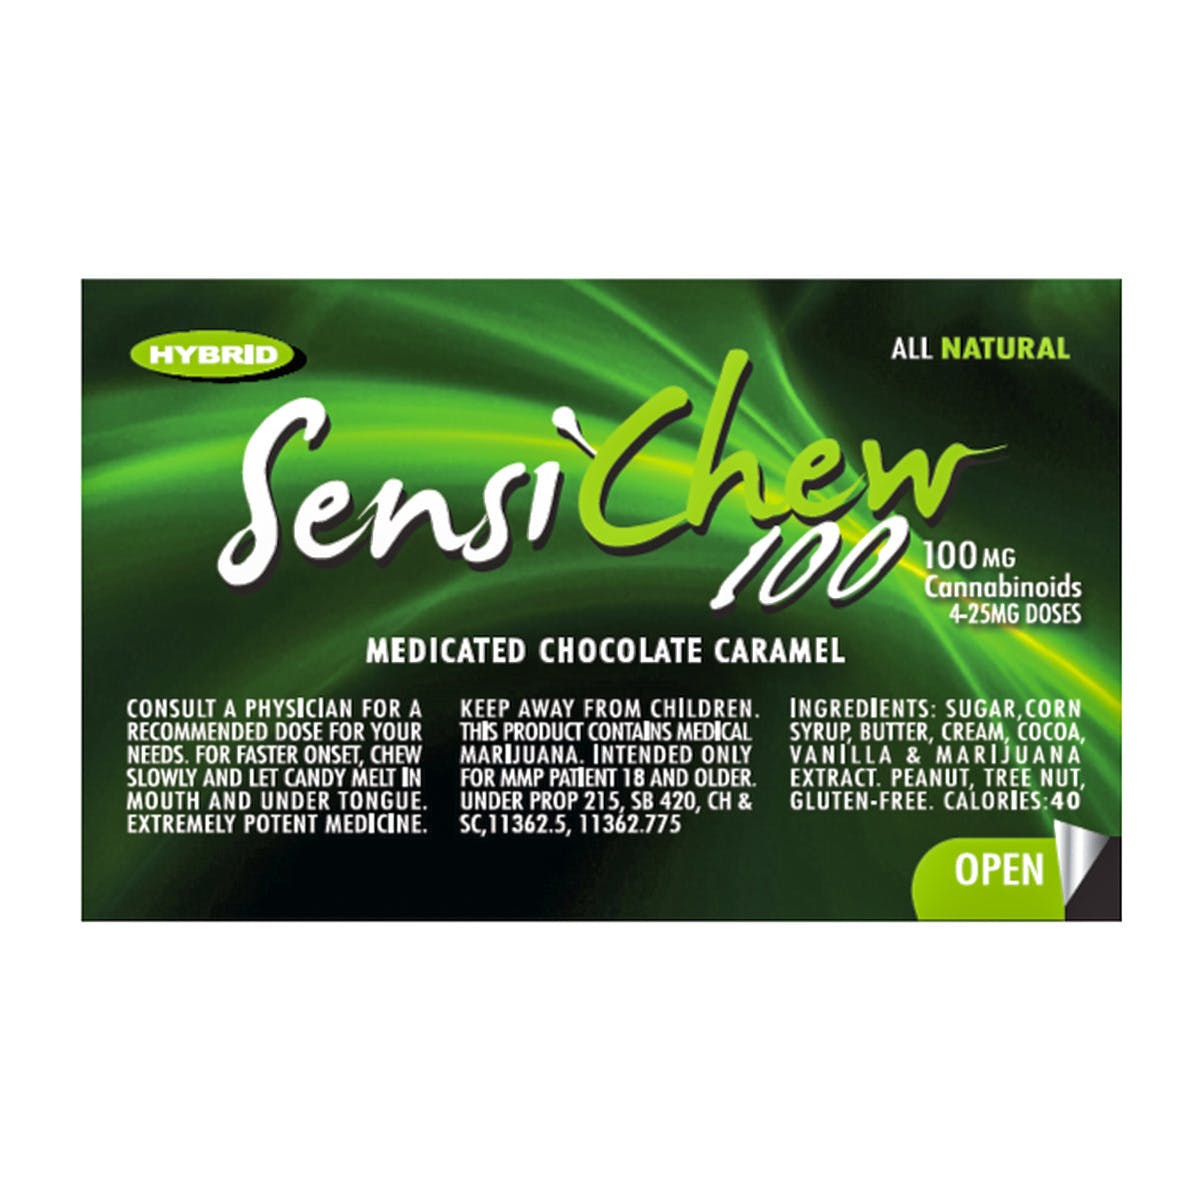 Sensi Chew 100, Hybrid for Anytime